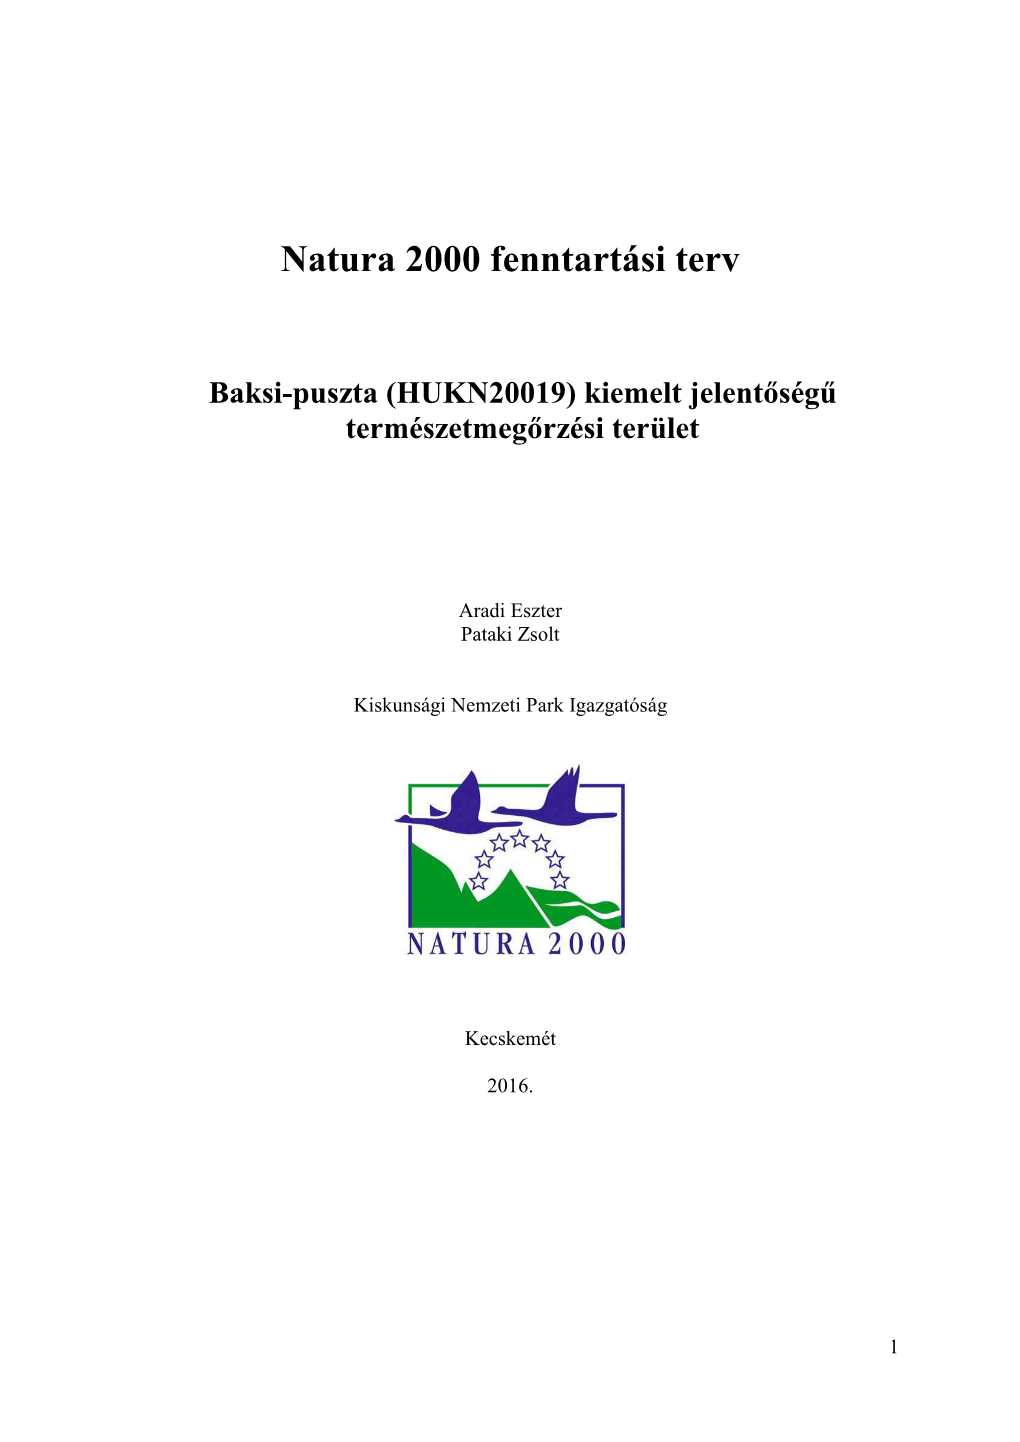 Natura 2000 Fenntartási Terv